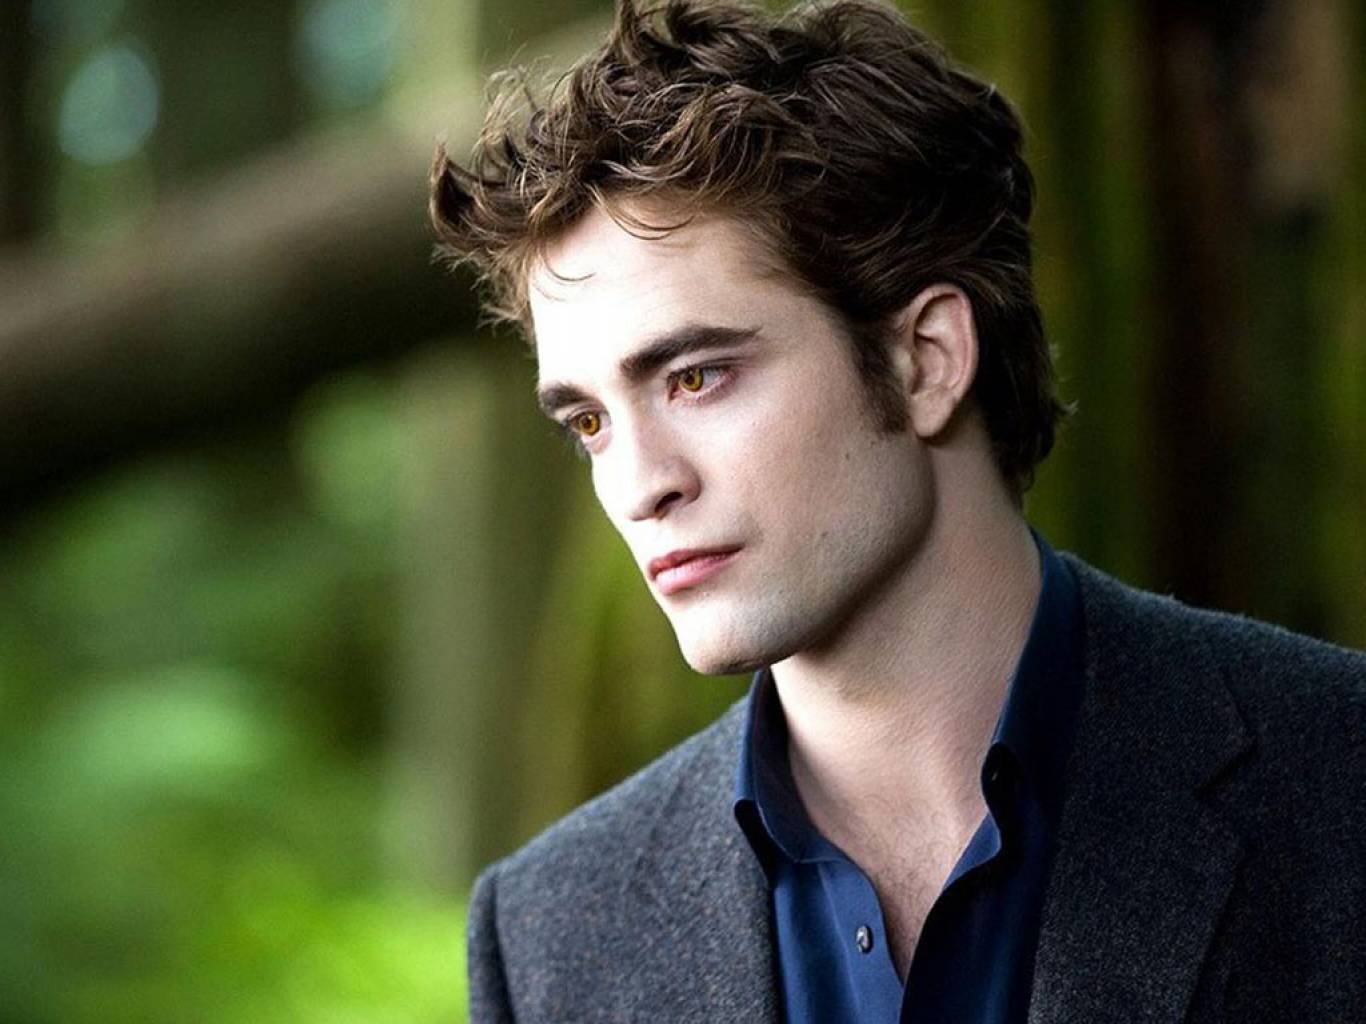 Robert Pattinson Batman Wallpapers  Top 25 Best Robert Pattinson Batman  Backgrounds Download